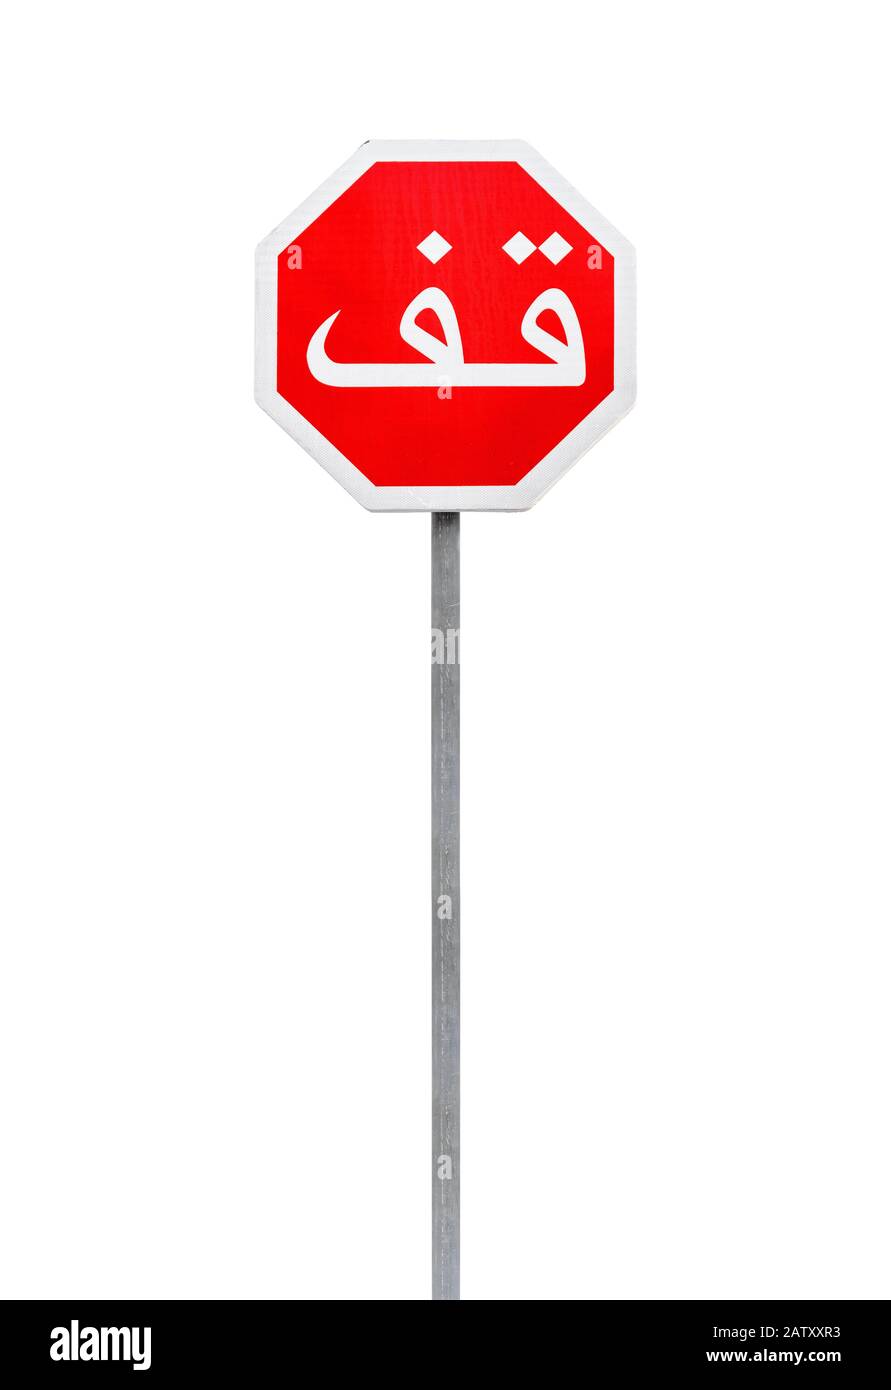 Panneau rouge stop avec étiquette de texte arabe sur un poteau métallique isolé sur photo blanche et verticale Banque D'Images